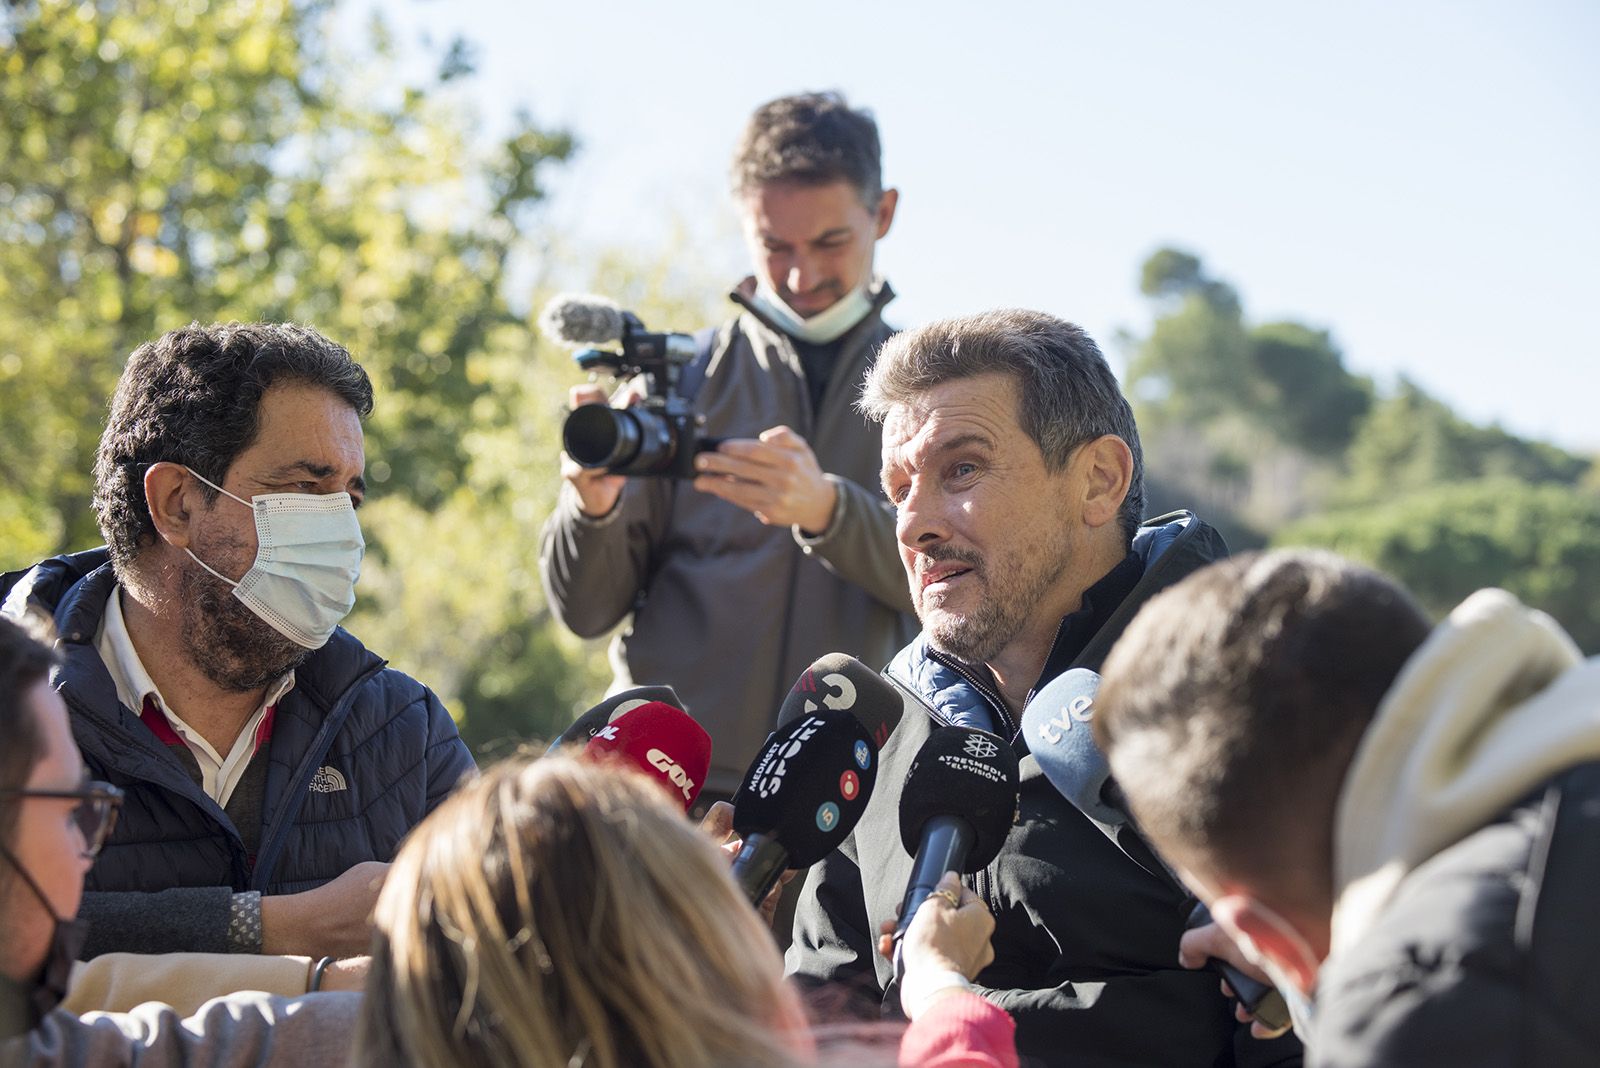 Torneig solidari amb Juan Carlos Unzué en el Club de Golf Sant Cugat. Fotos: Bernat Millet.